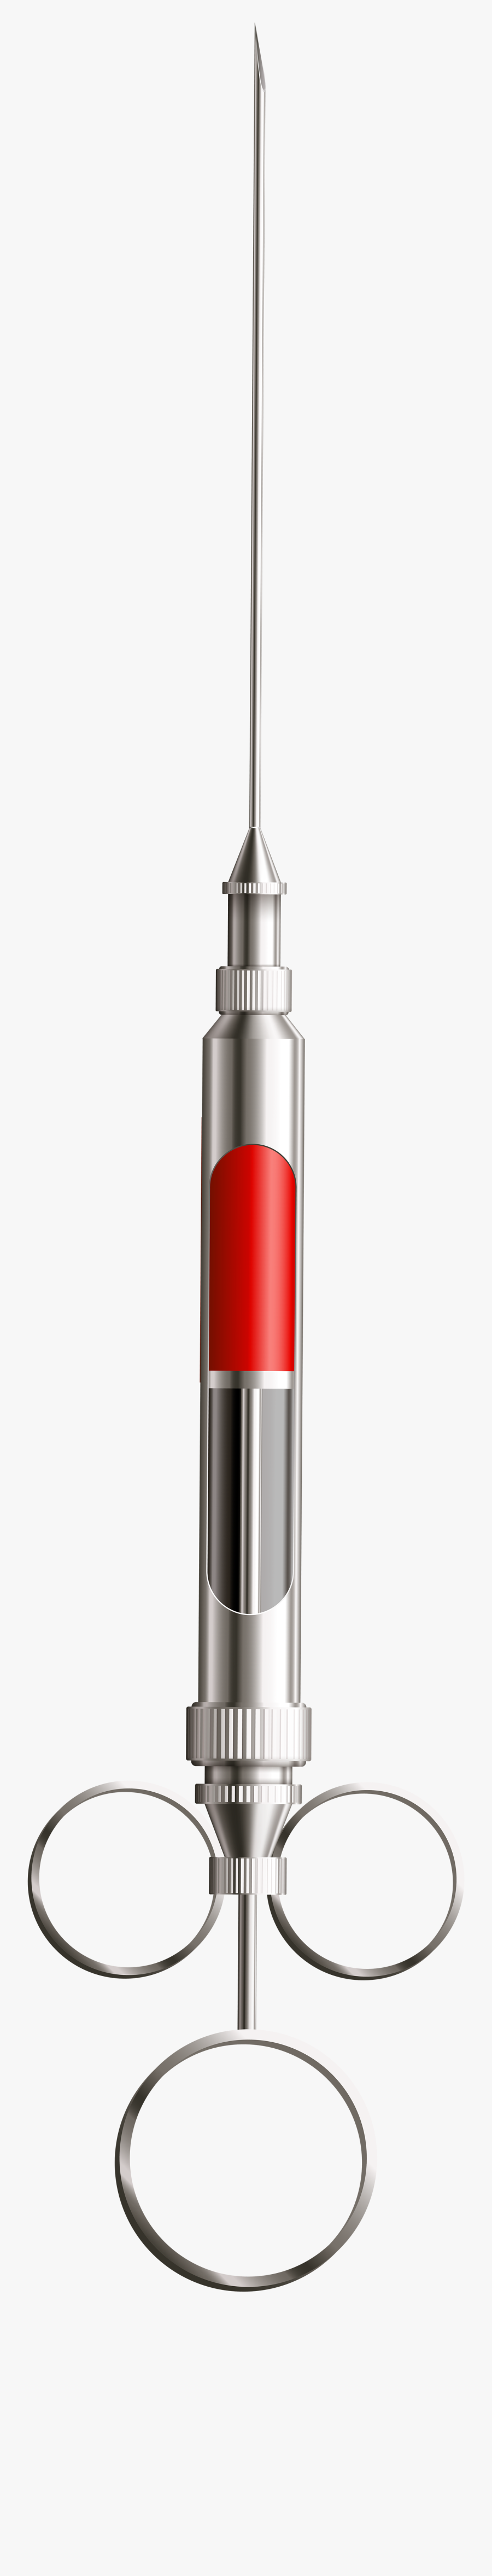 Metal Syringe Png Clip Art - Metal Syringe Png, Transparent Clipart